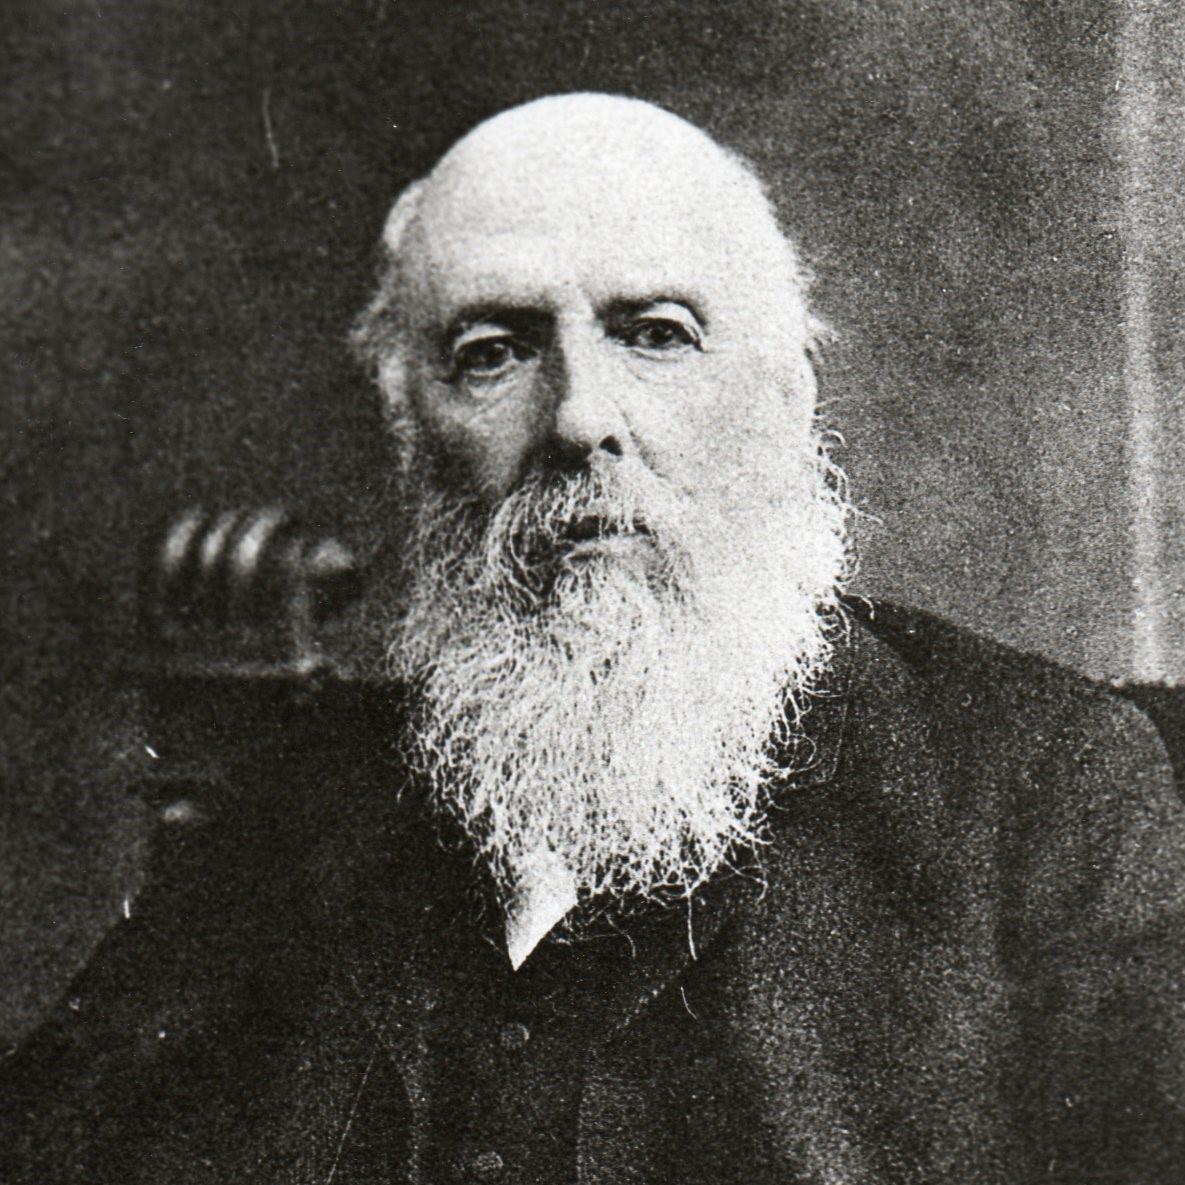 Sir Wilfrid Lawson